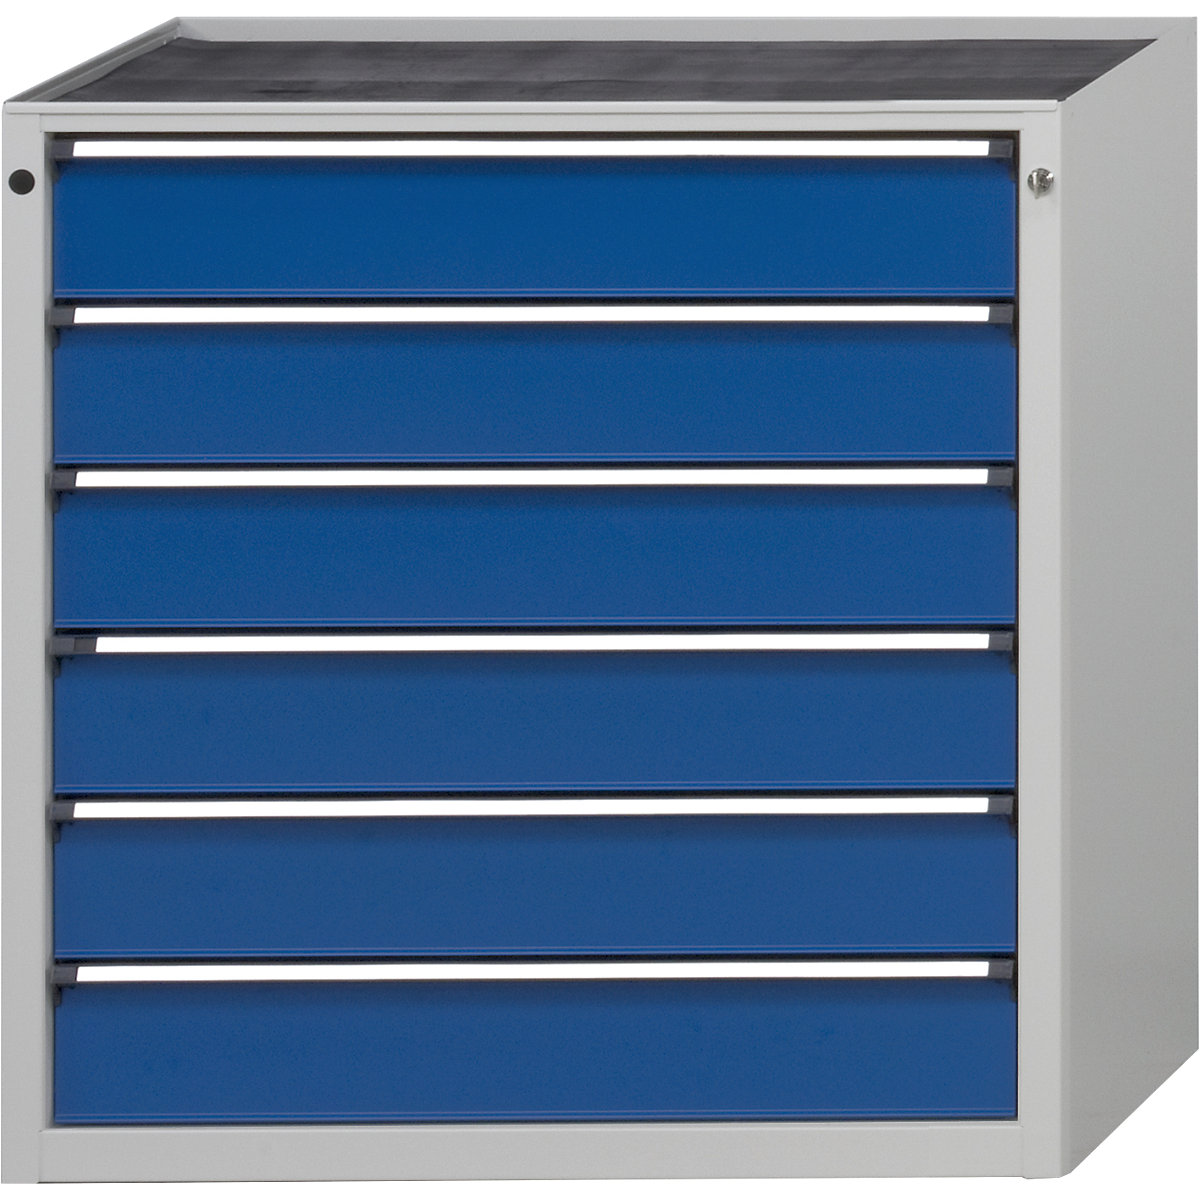 ANKE – Predalnik, ŠxG 910 x 675 mm, nosilnost predalov 200 kg, 6 predalov, višina 980 mm, sprednji del encijan modra